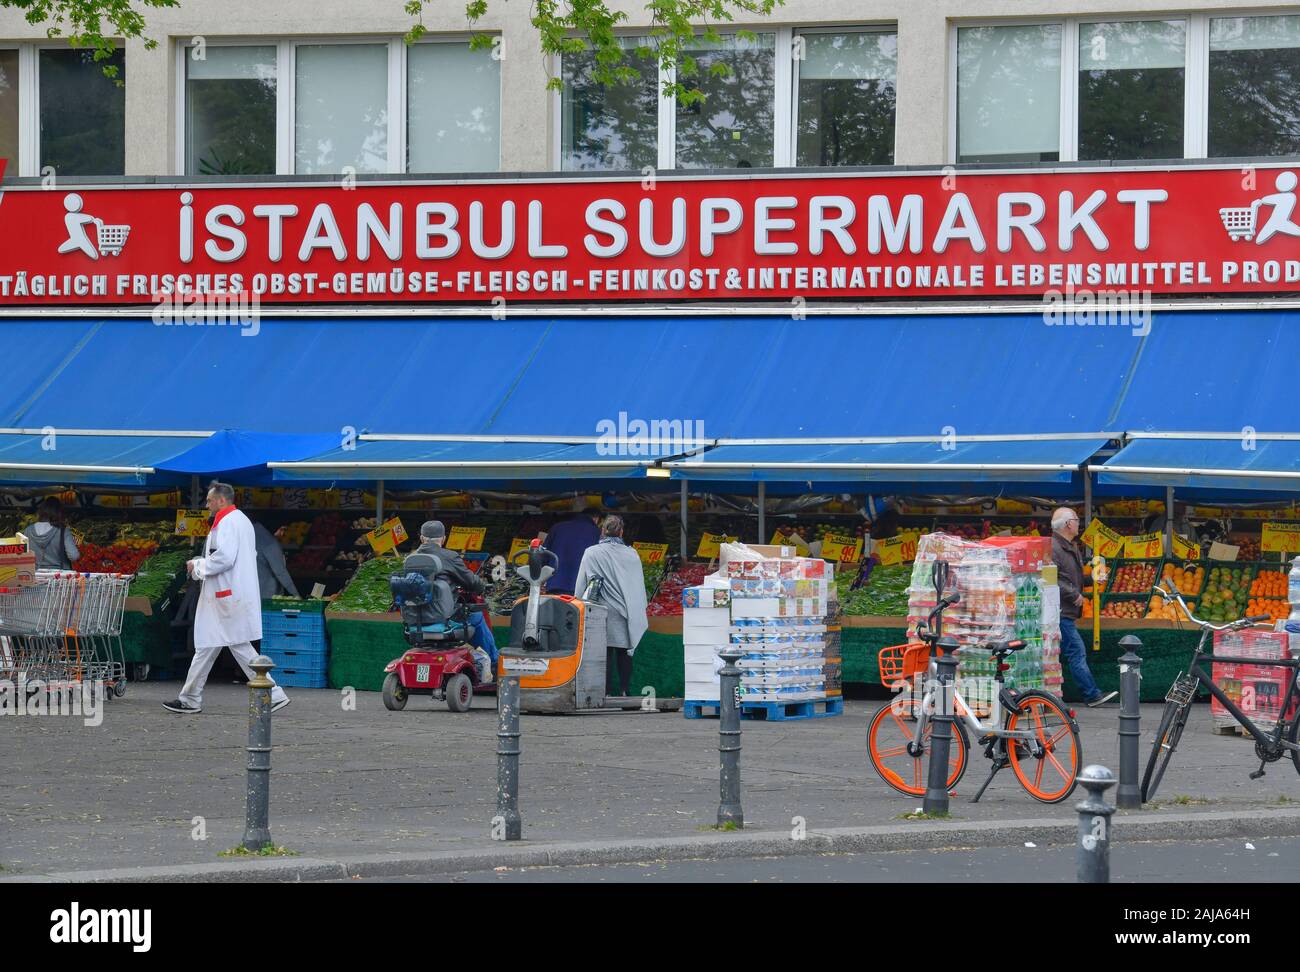 Istanbul Supermarkt, Kottbusser Tor, Kreuzberg, Berlin, Deutschland Stock Photo